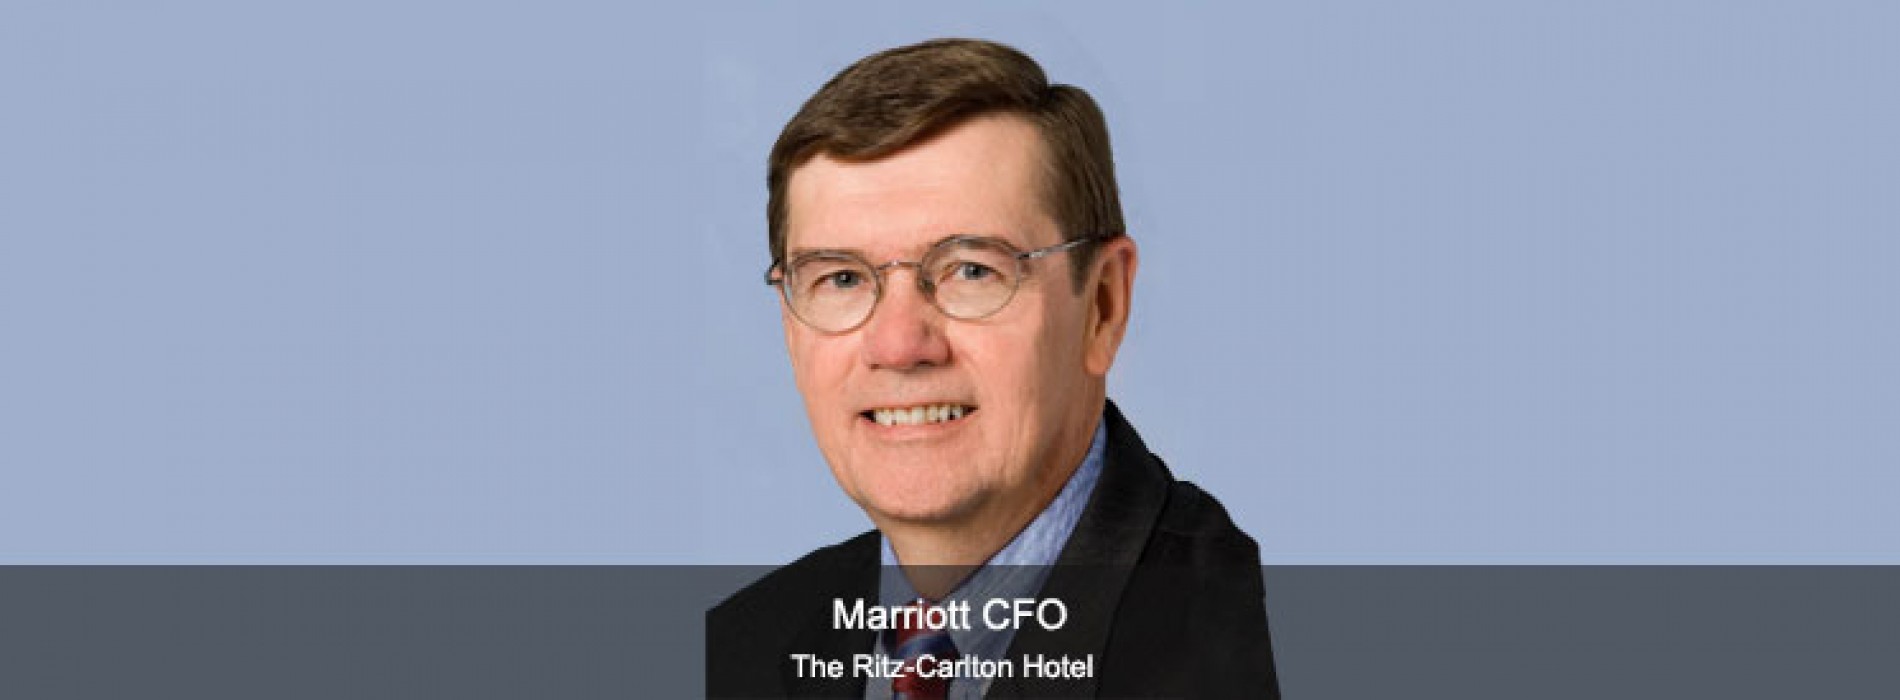 Marriott CFO to Retire on December 31, 2015